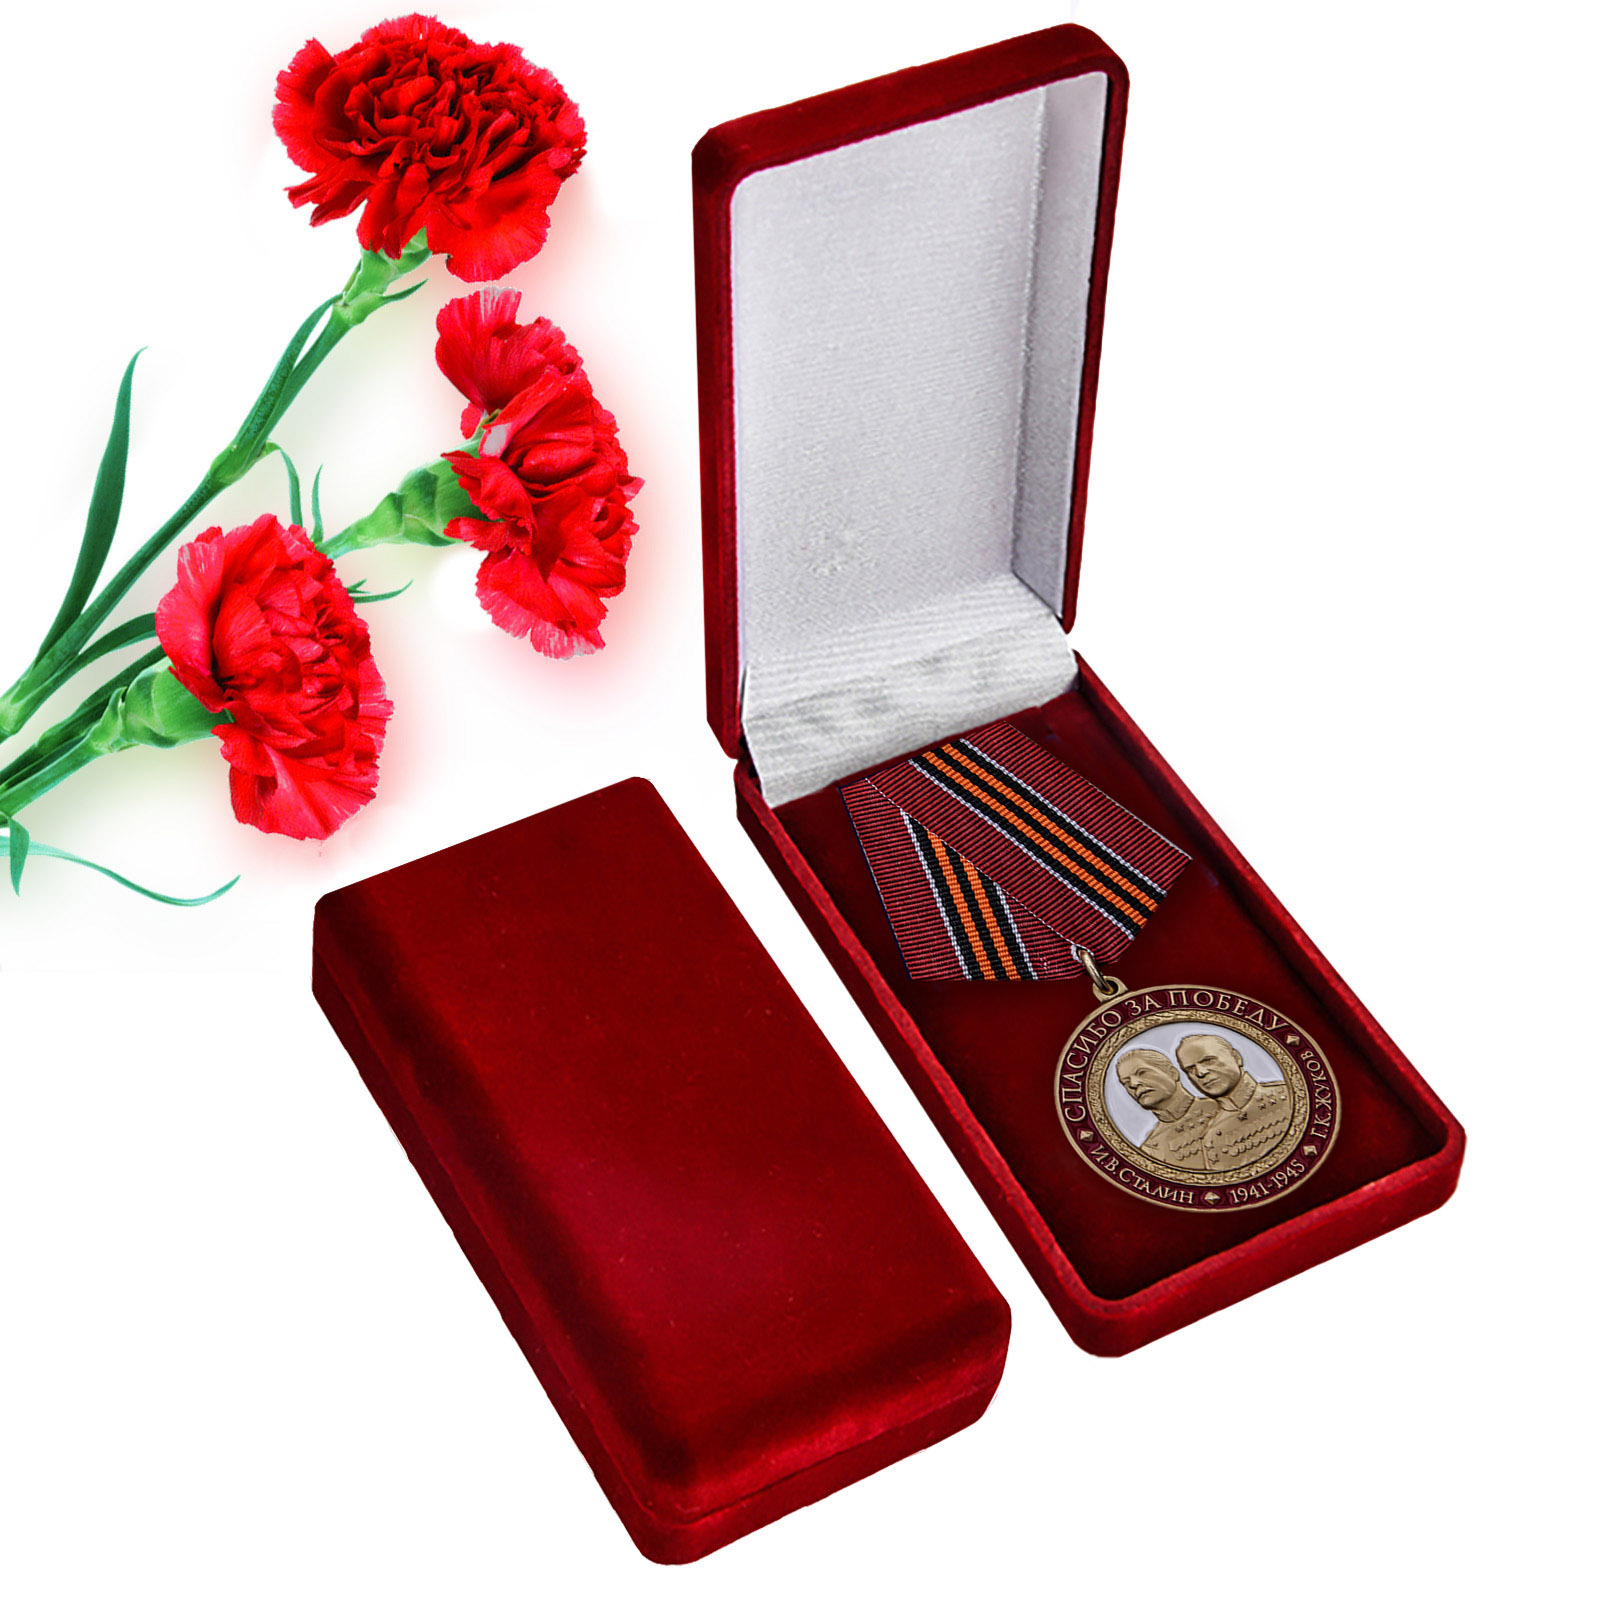 Купить памятную медаль "Спасибо за Победу" в бархатистом красном футляре в подарок